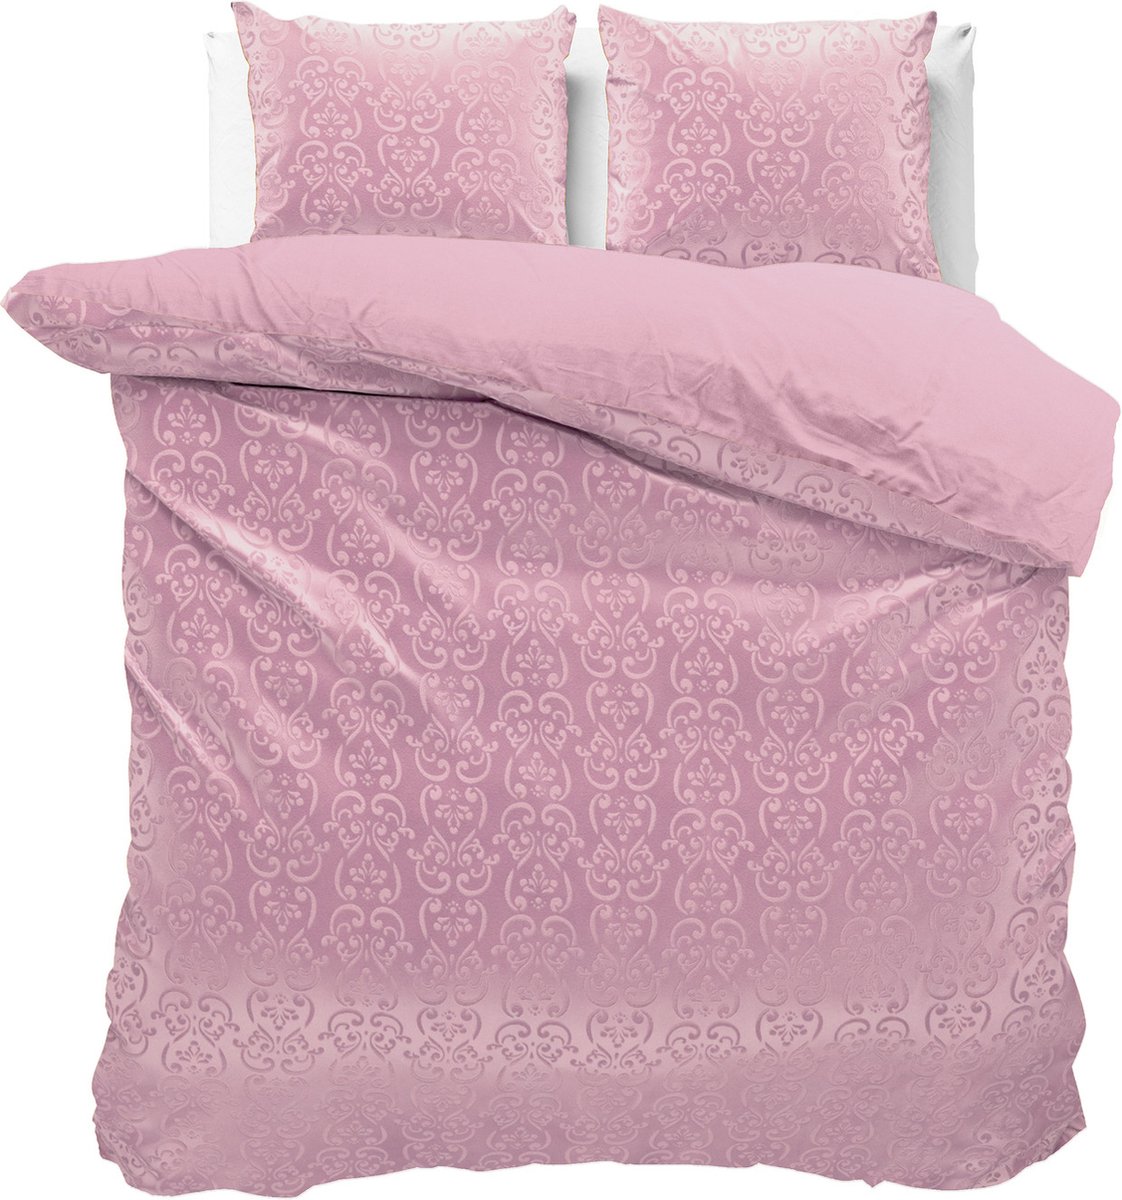 Fluweel zachte velvet dekbedovertrek embossed roze - lits-jumeaux (240x200/220) - luxe uitstraling - handige drukknopsluiting